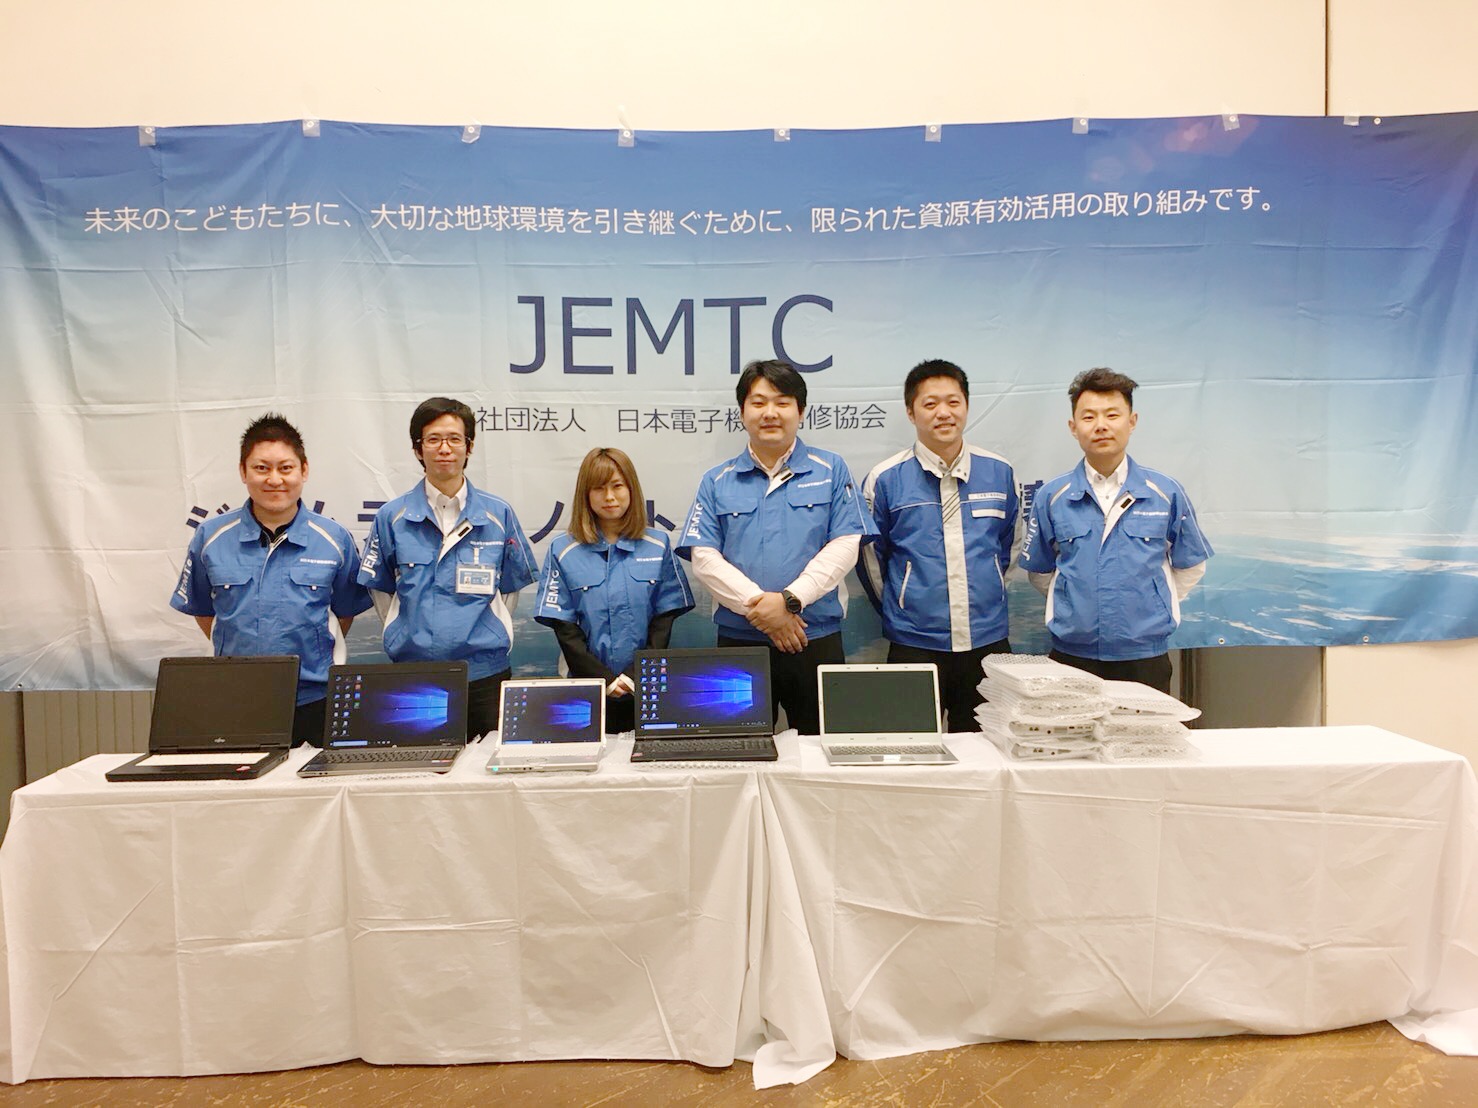 ジェムテク ノートパソコン譲渡会開催 石川由香里 のリポートblog